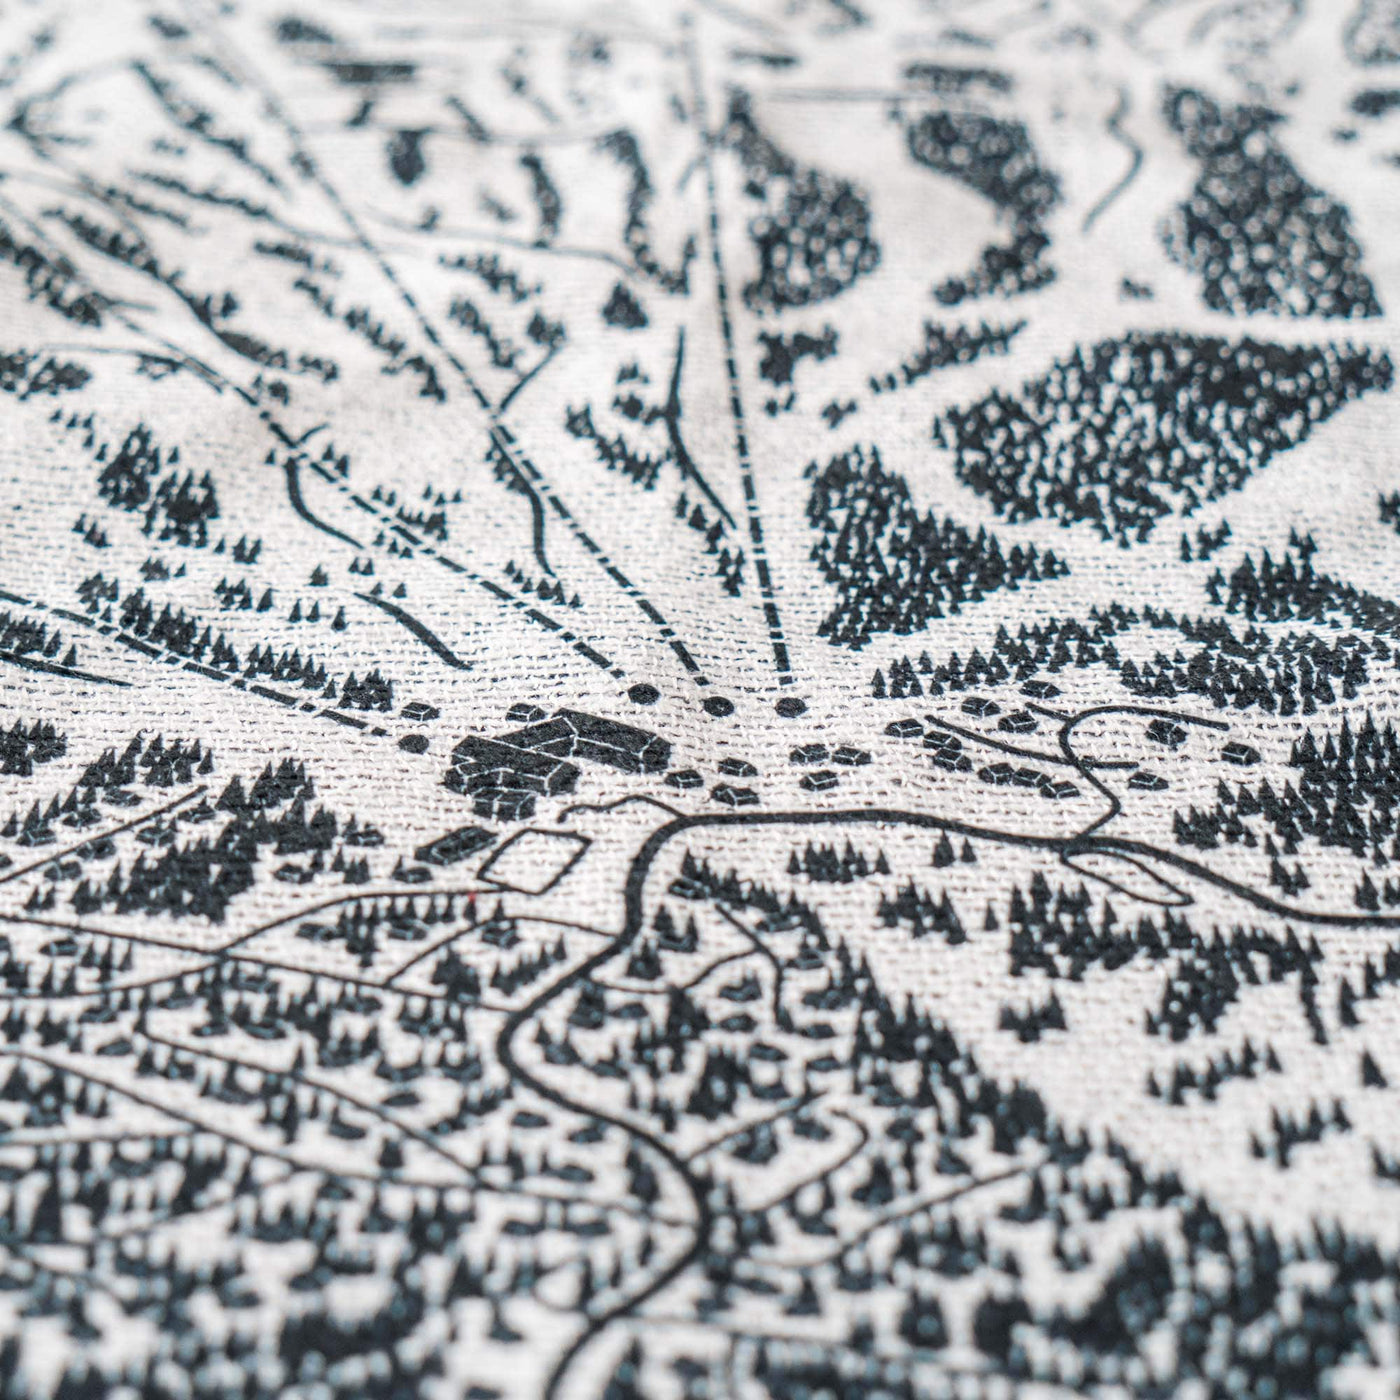 Snowbird, Utah Ski Trail Map Blankets